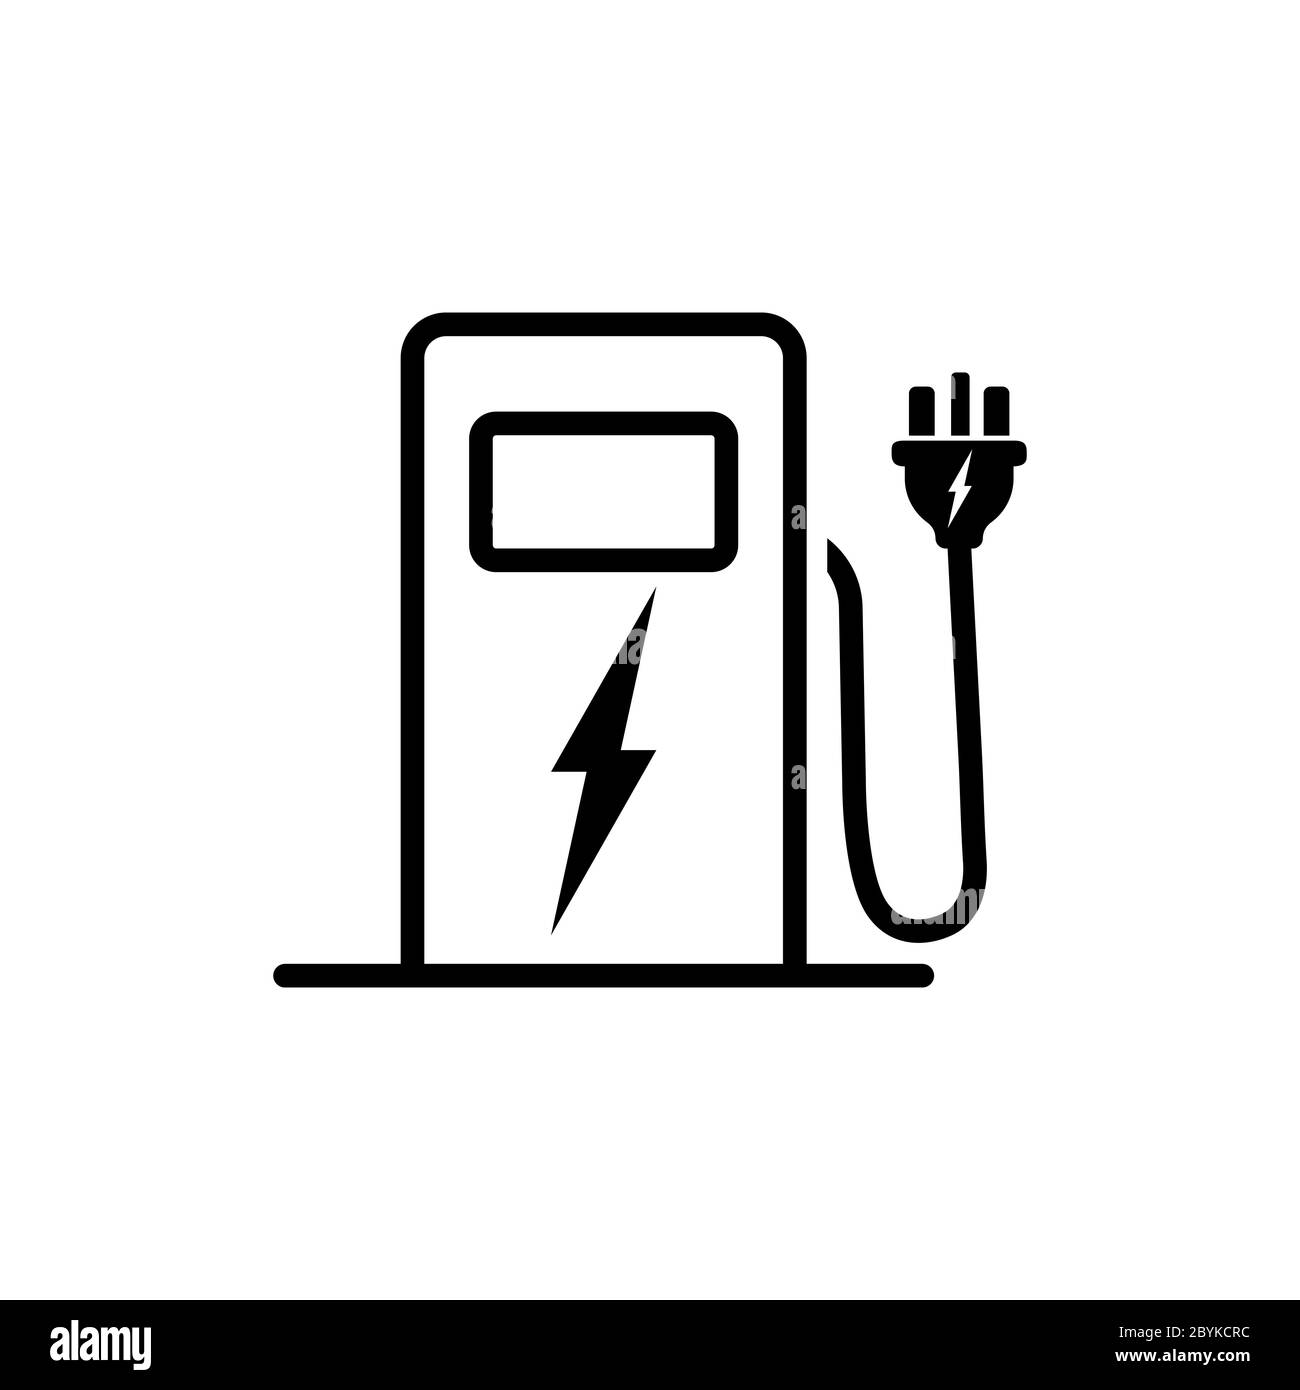 Symbole noir de conception d'icône de station-service ou de centrale électrique isolé sur fond blanc. Vecteur EPS 10. Illustration de Vecteur